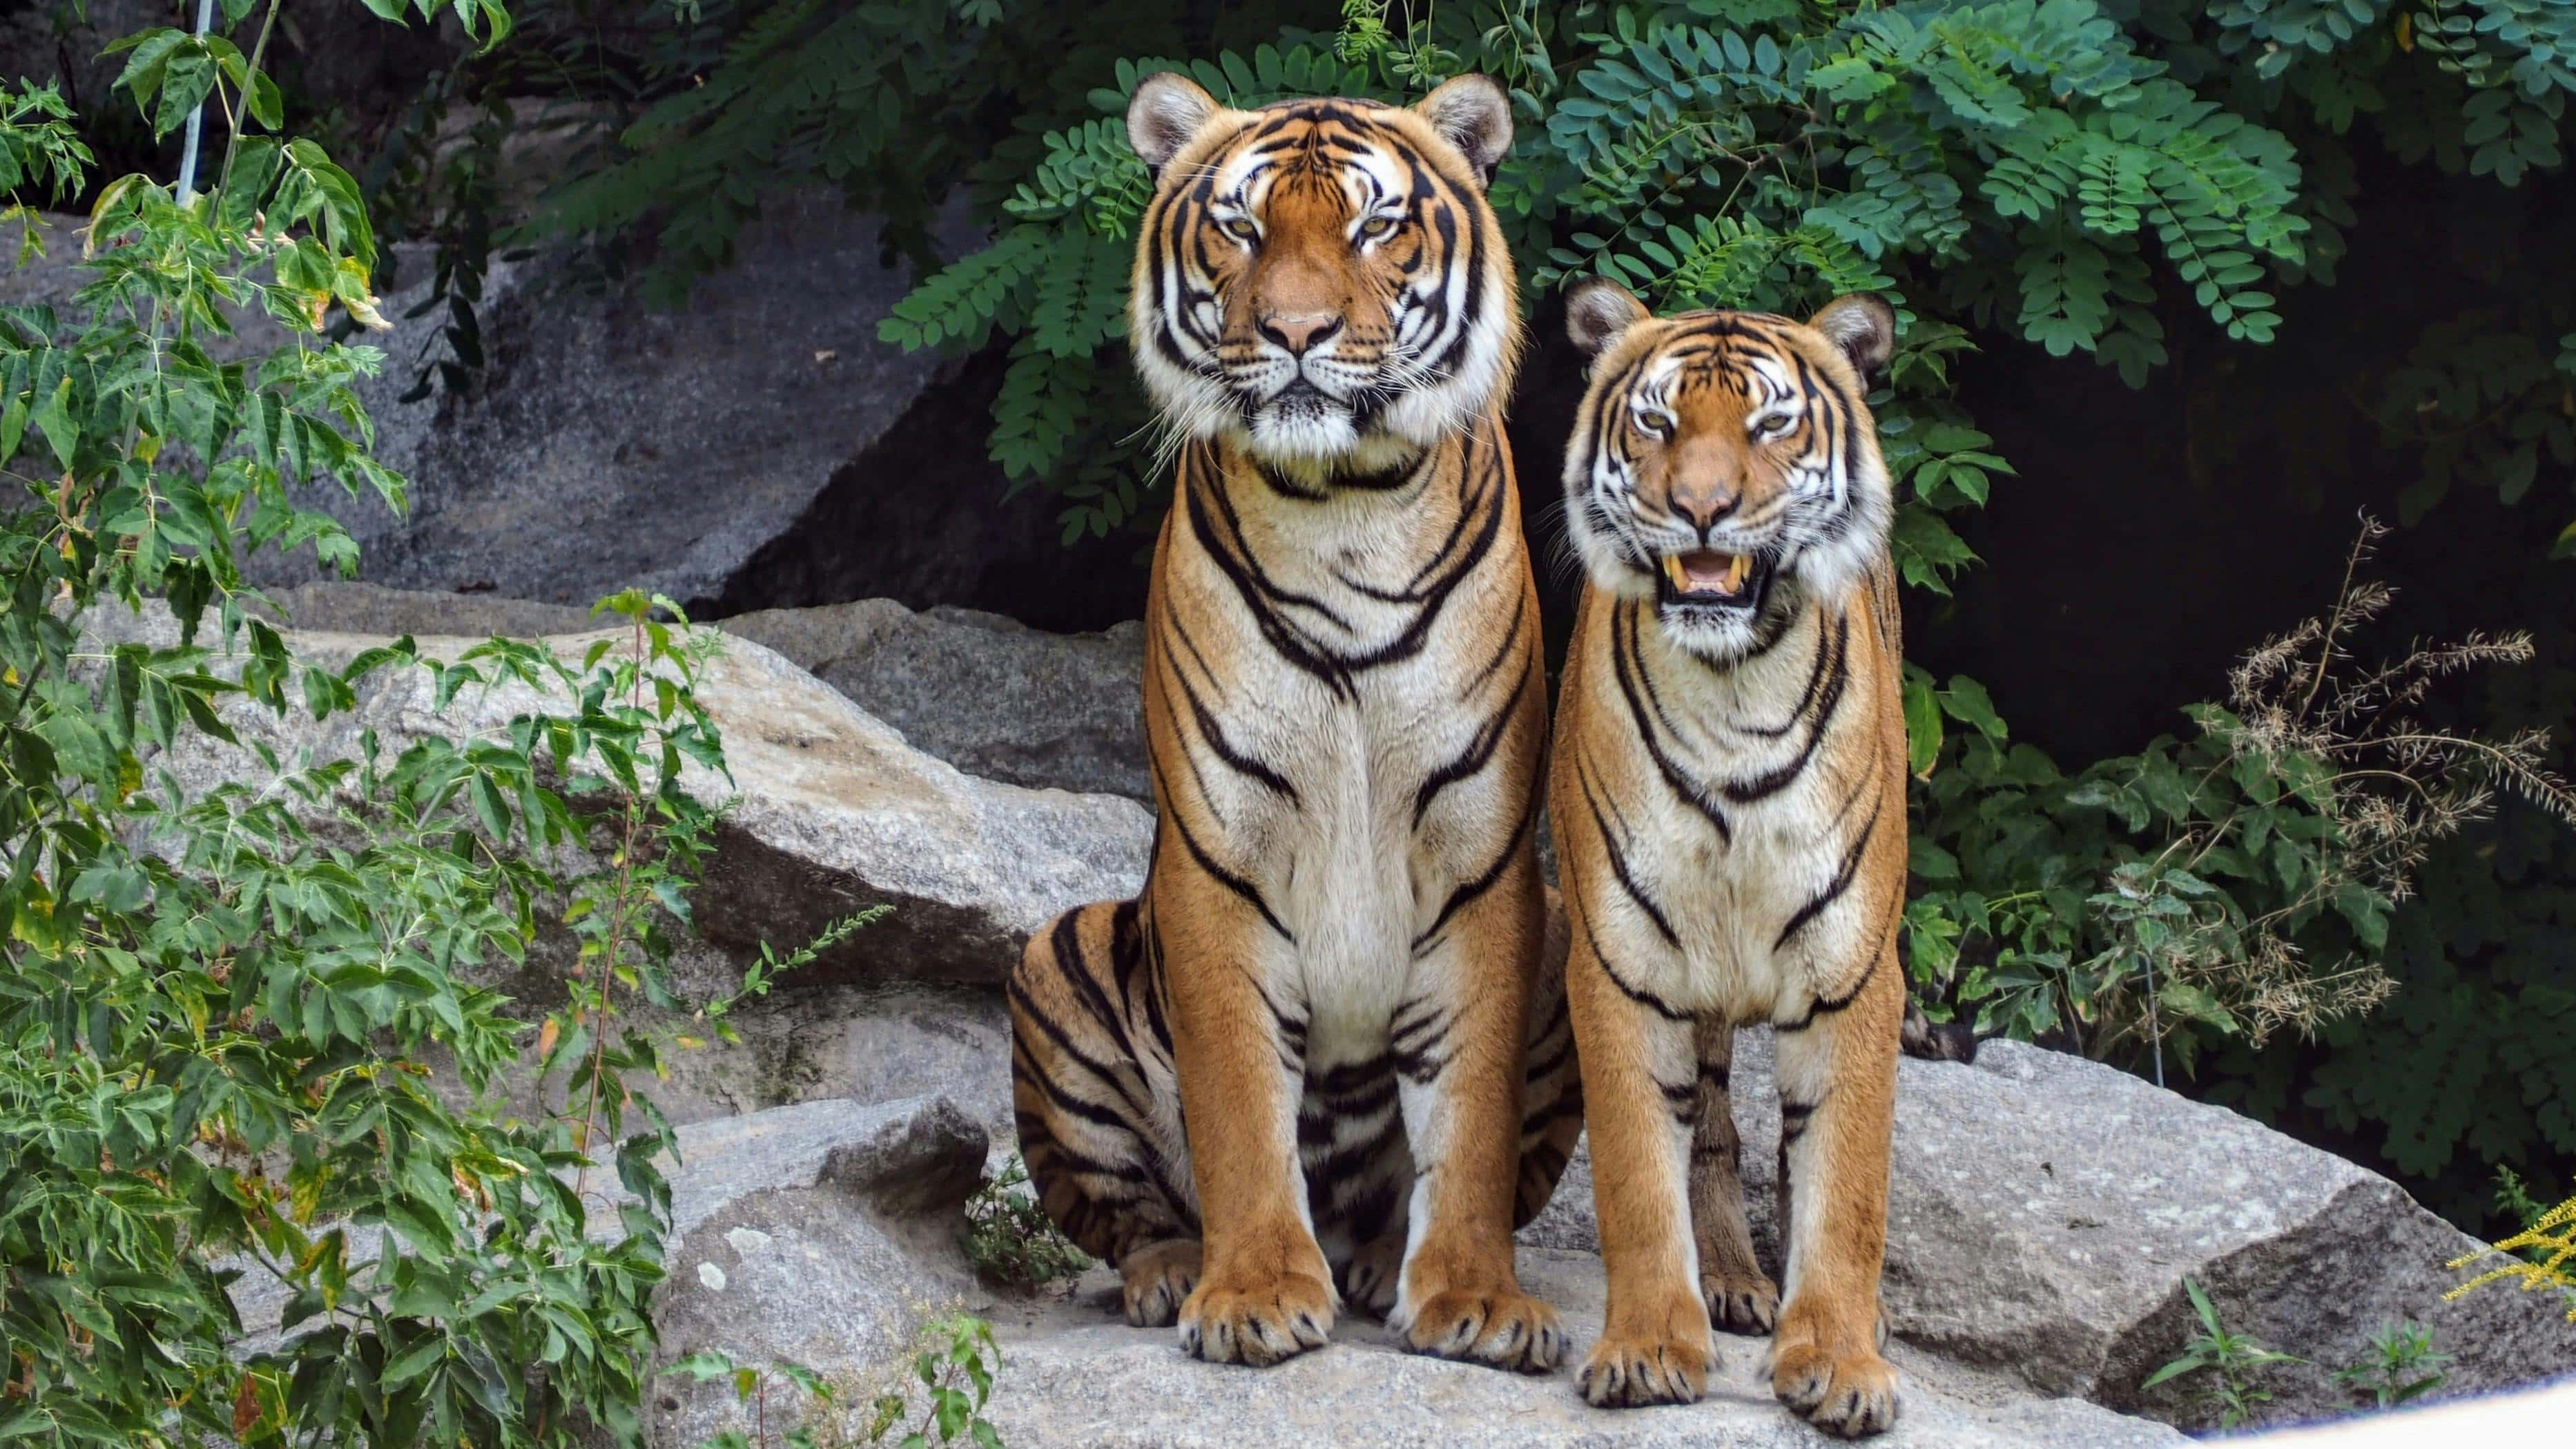 Zwei Tiger stehen nebeneinander auf Felsen mit grünen Blättern im Hintergrund.